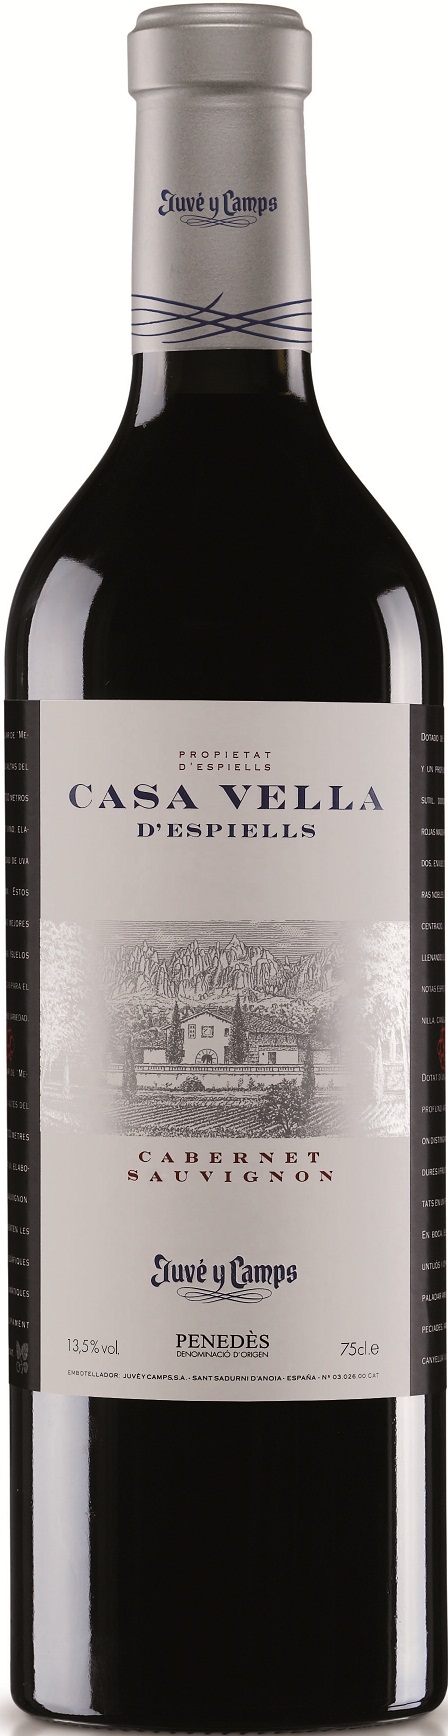 Imagen de la botella de Vino Casa Vella d'Espiells